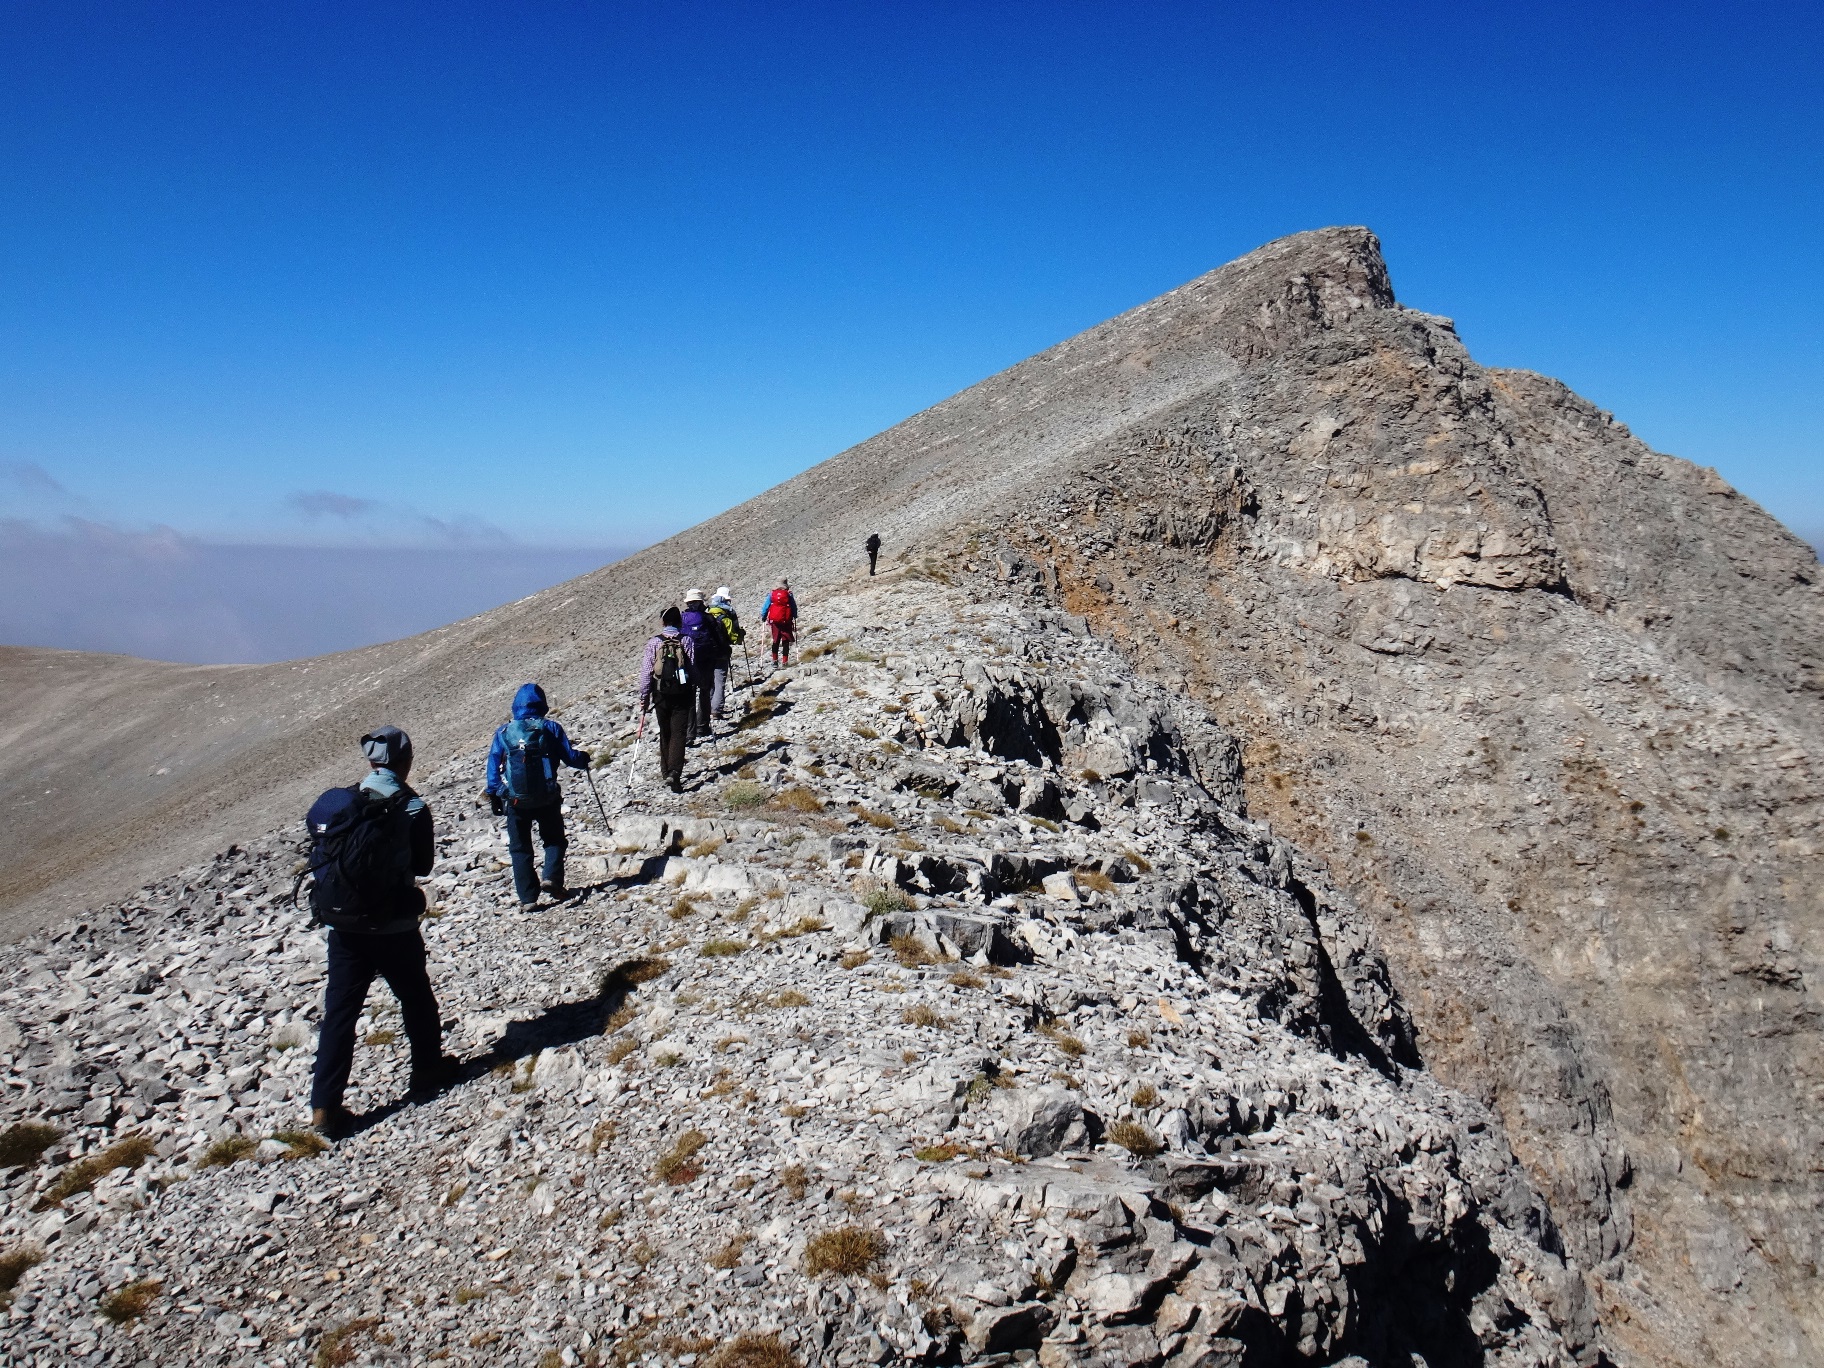 8月19日出発「ギリシャ最高峰オリンポス山登頂と世界遺産メテオラ、エーゲ海クルーズ 10日間」